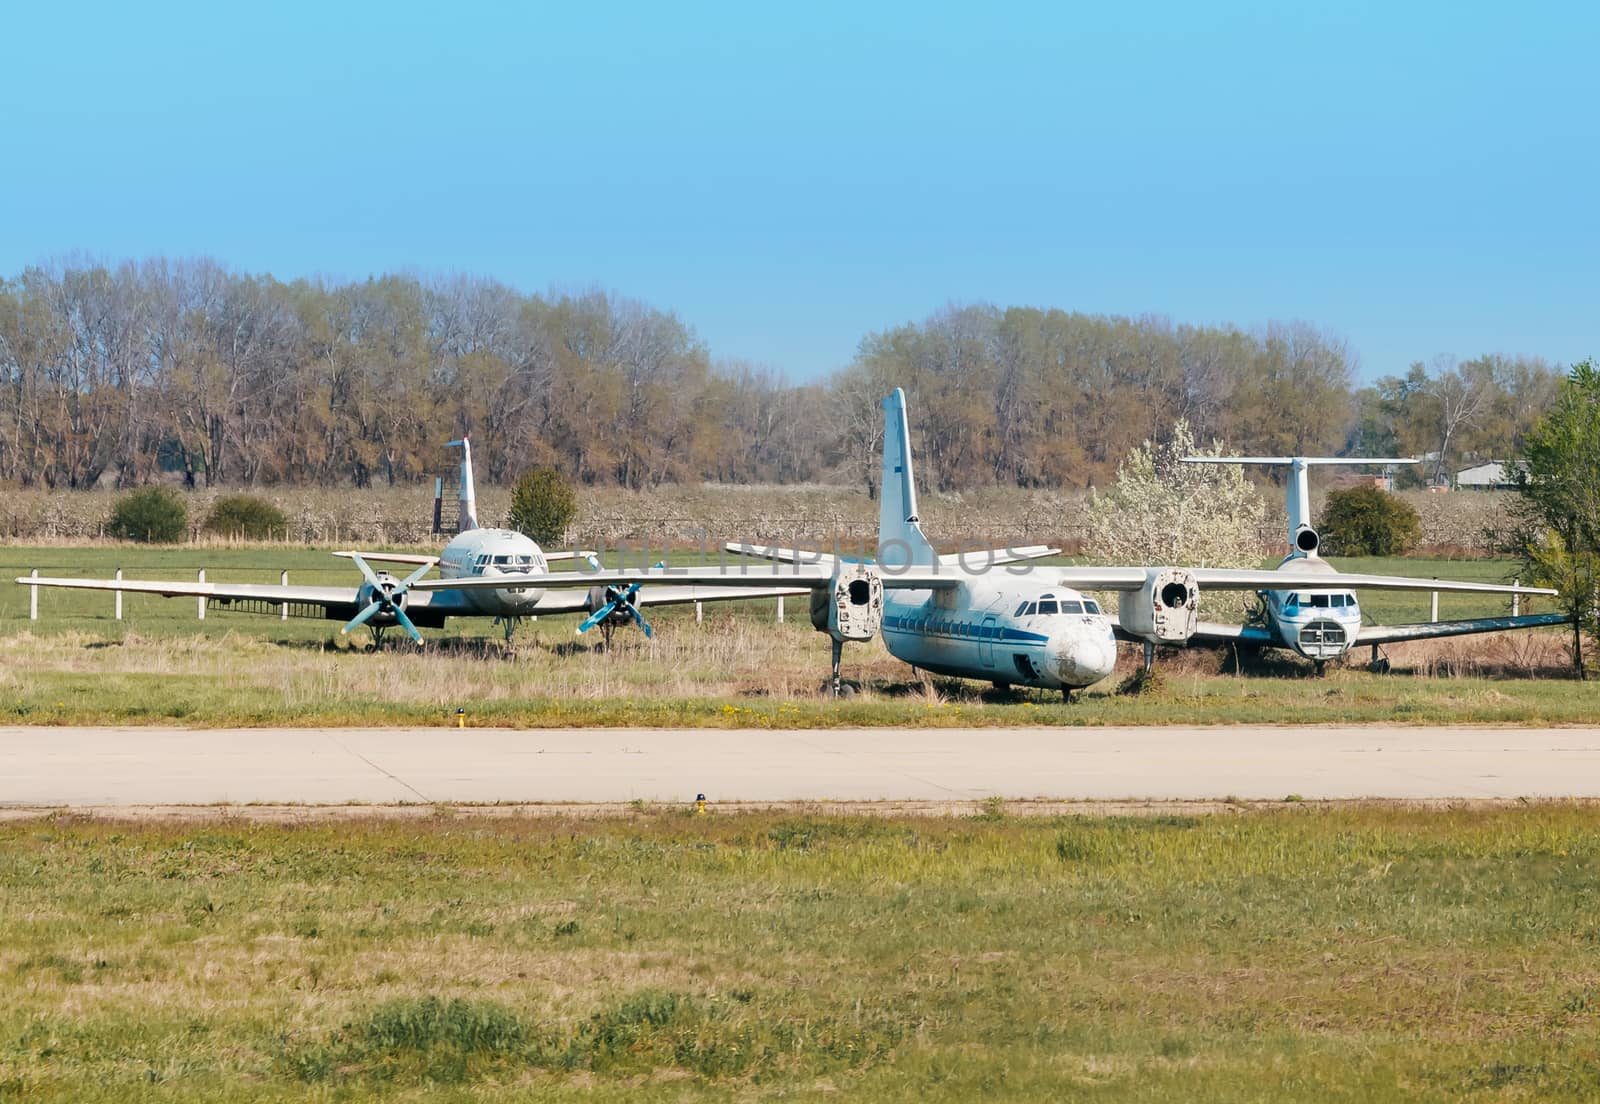 Cemetery aircraft near the runway by zeffss